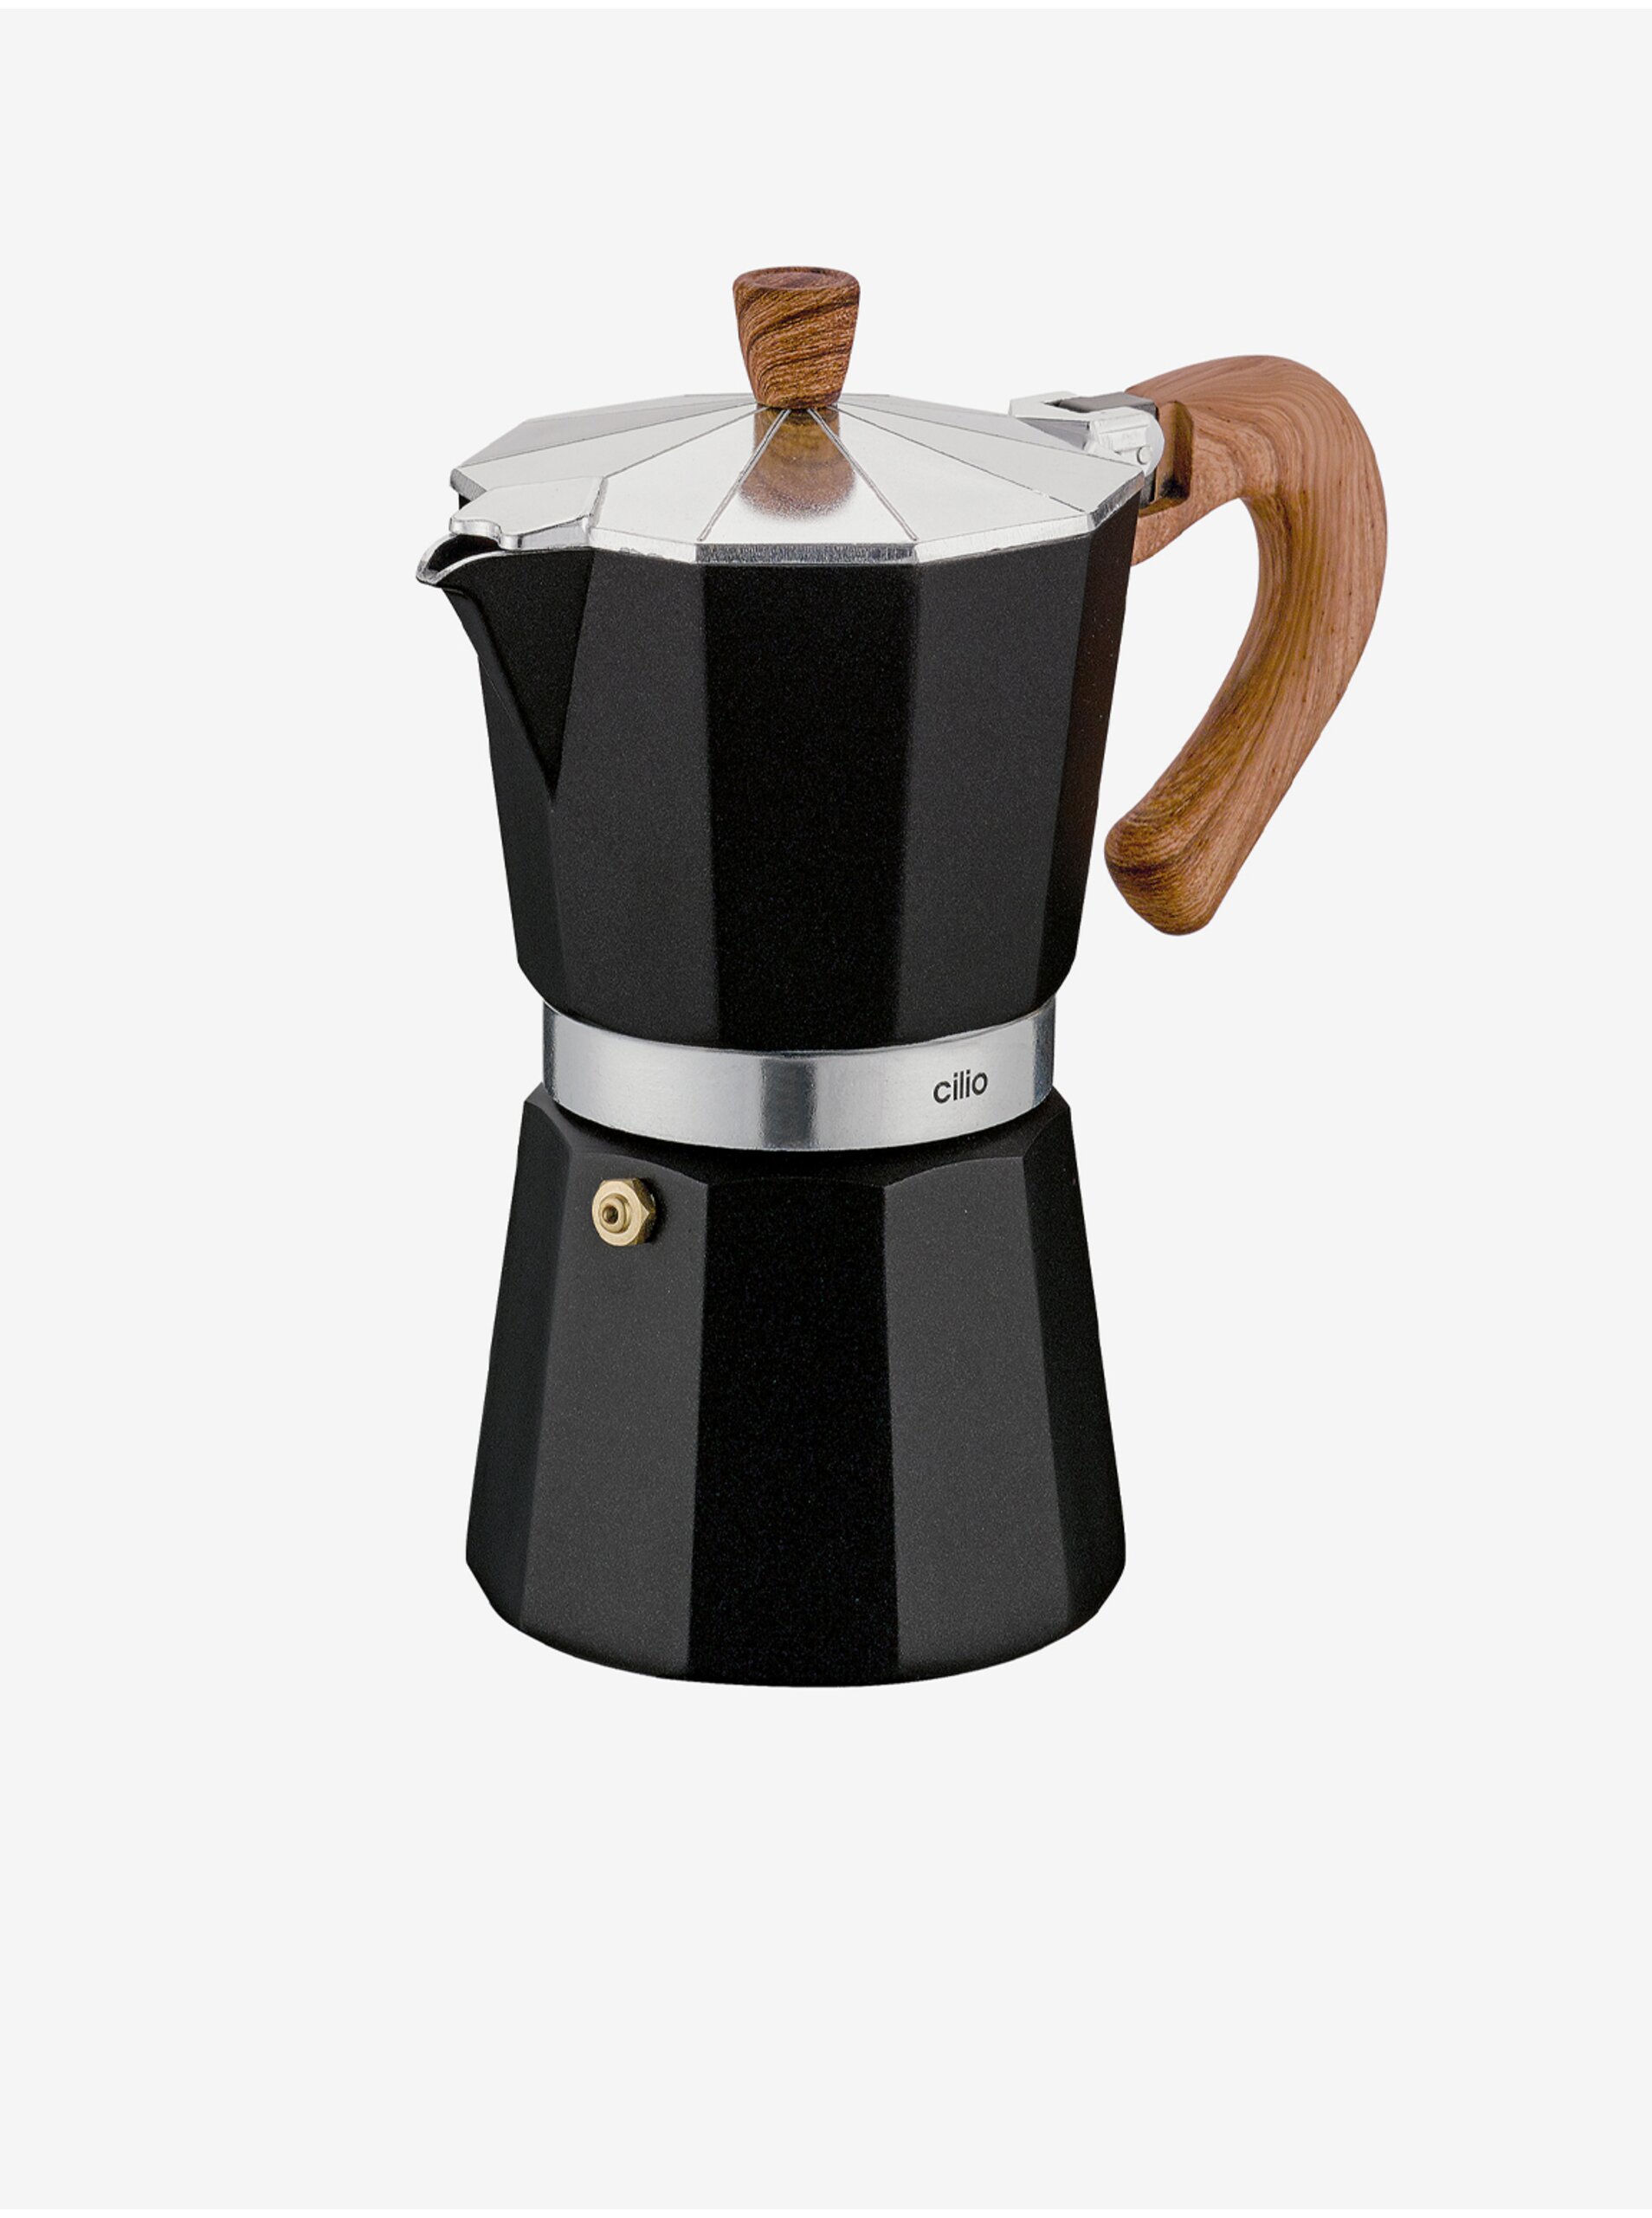 Lacno Čierny moka kávovar/espressovač Classico Natura na 6 šálok Cilio